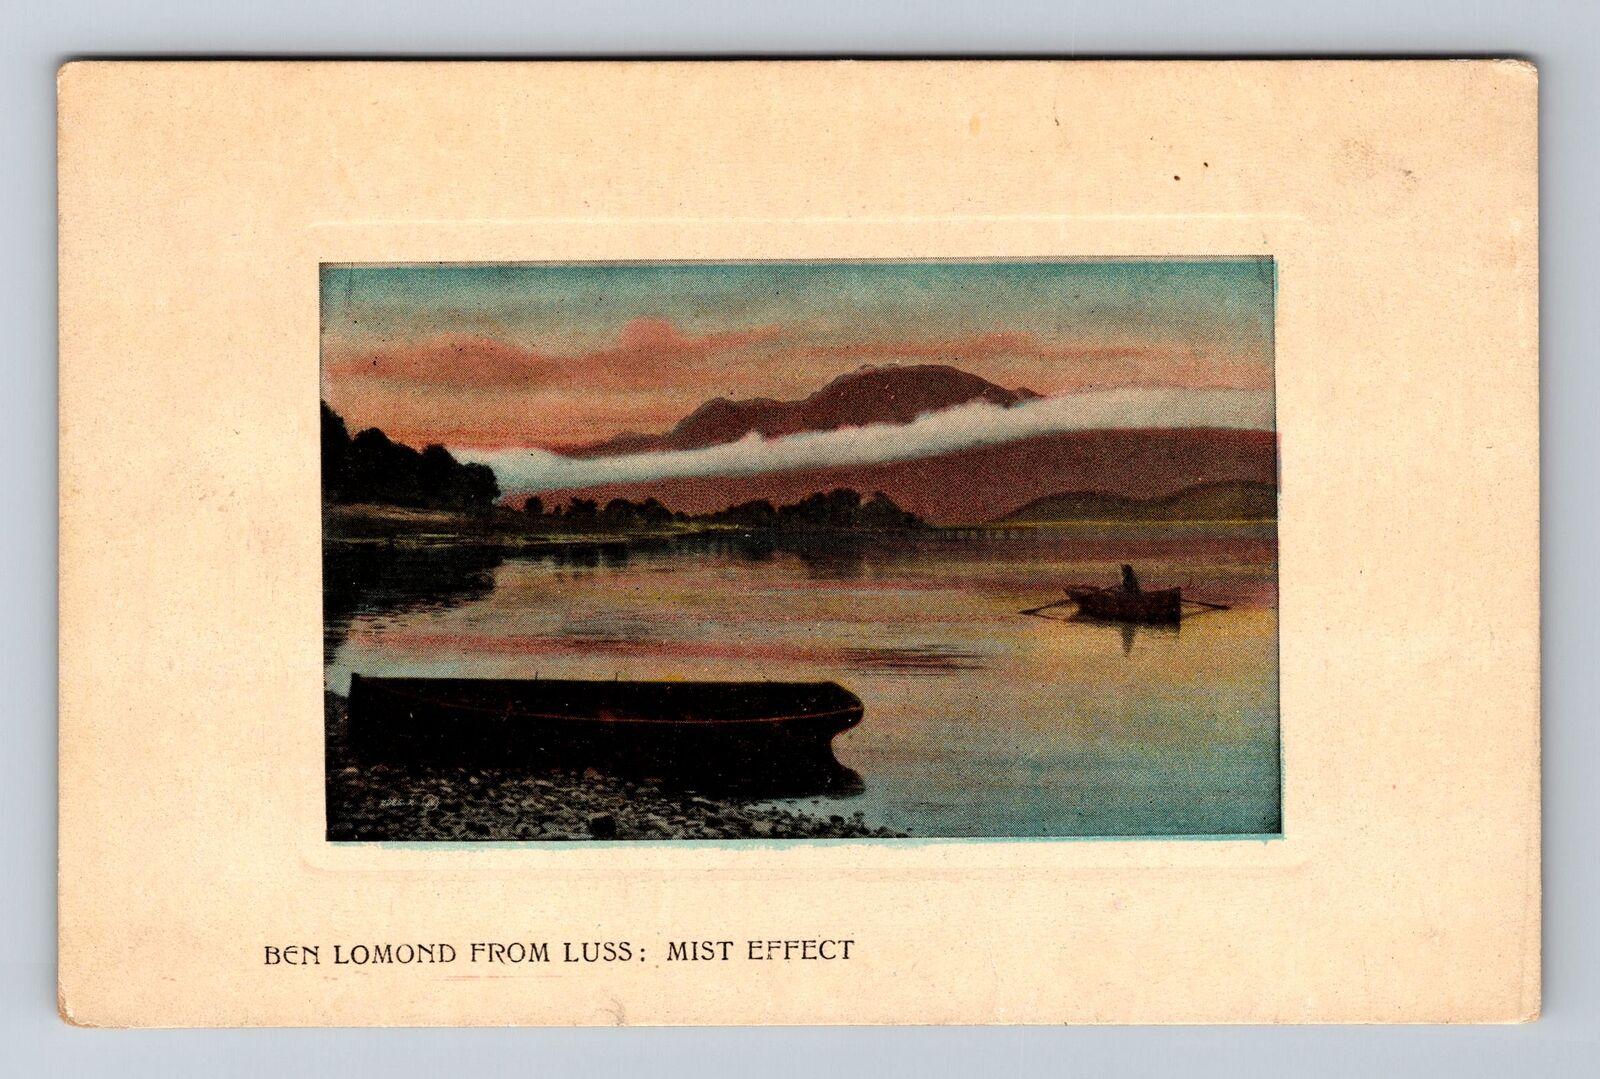 Loch Lomond-Scotland, Ben Lomond, Mist on River, Vintage Postcard